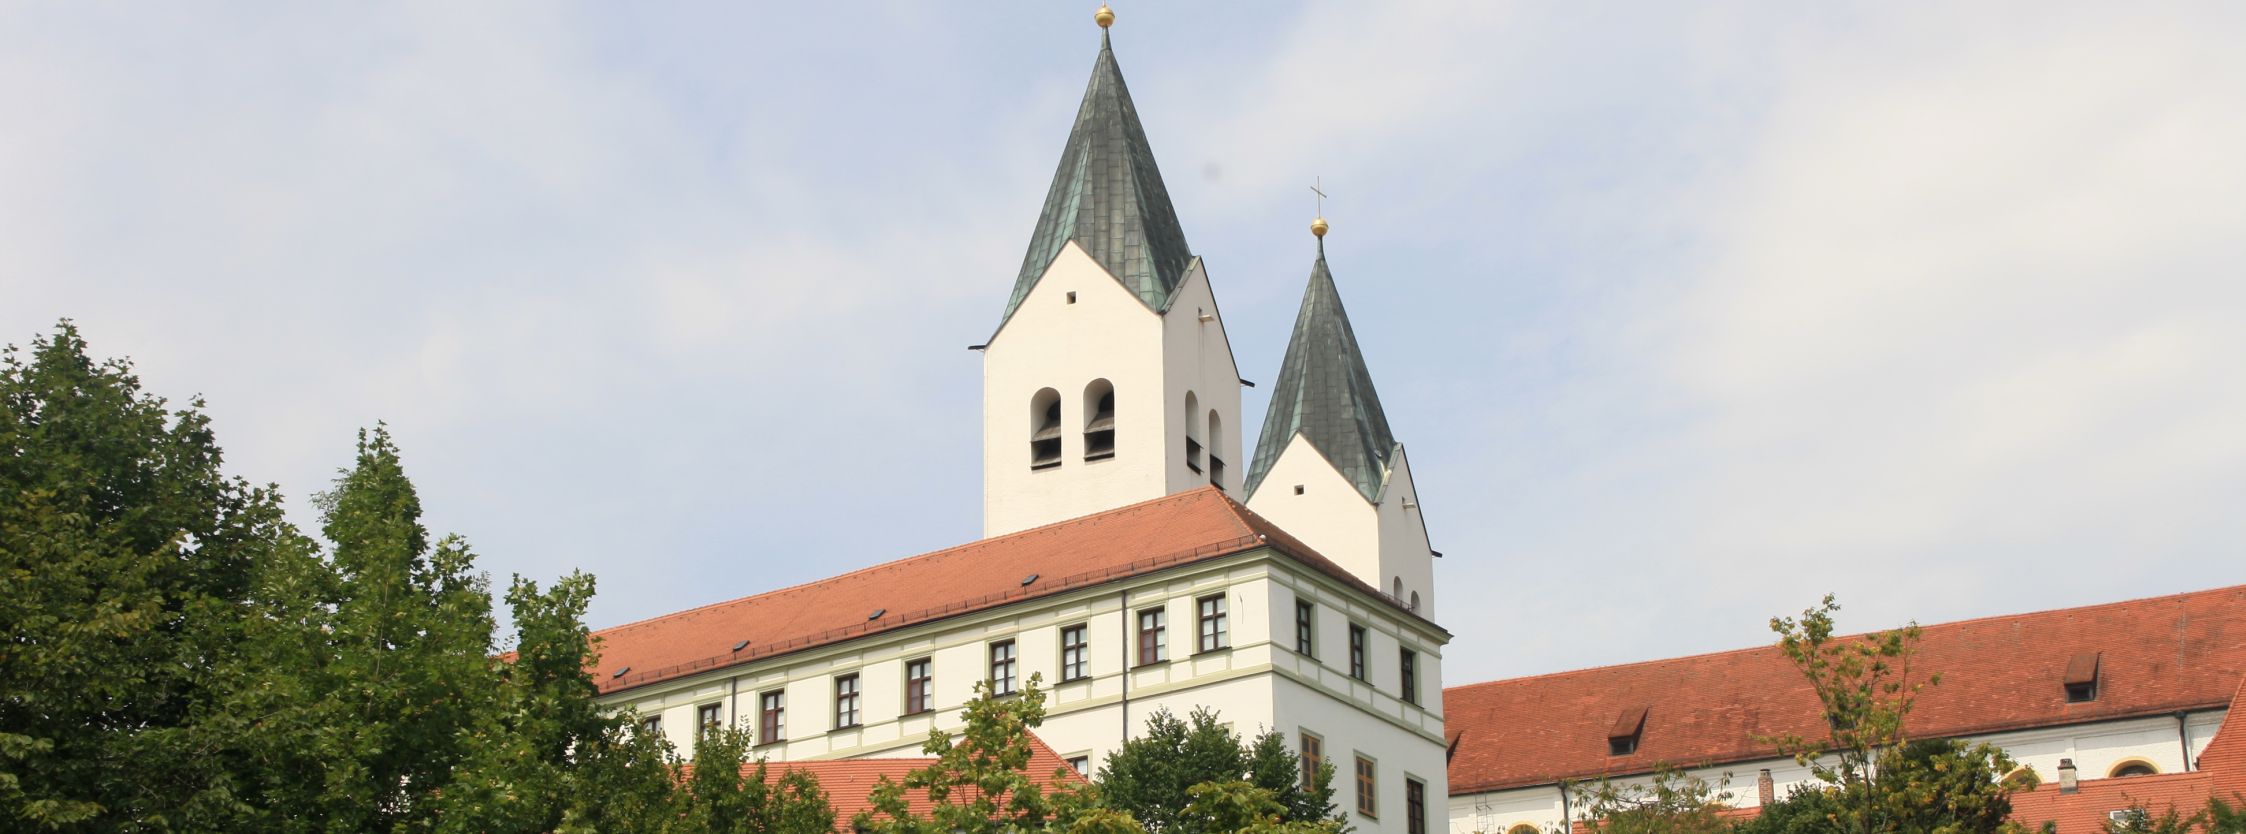 Deutsch und Fremdsprache lernen in Sprachschule in Freising